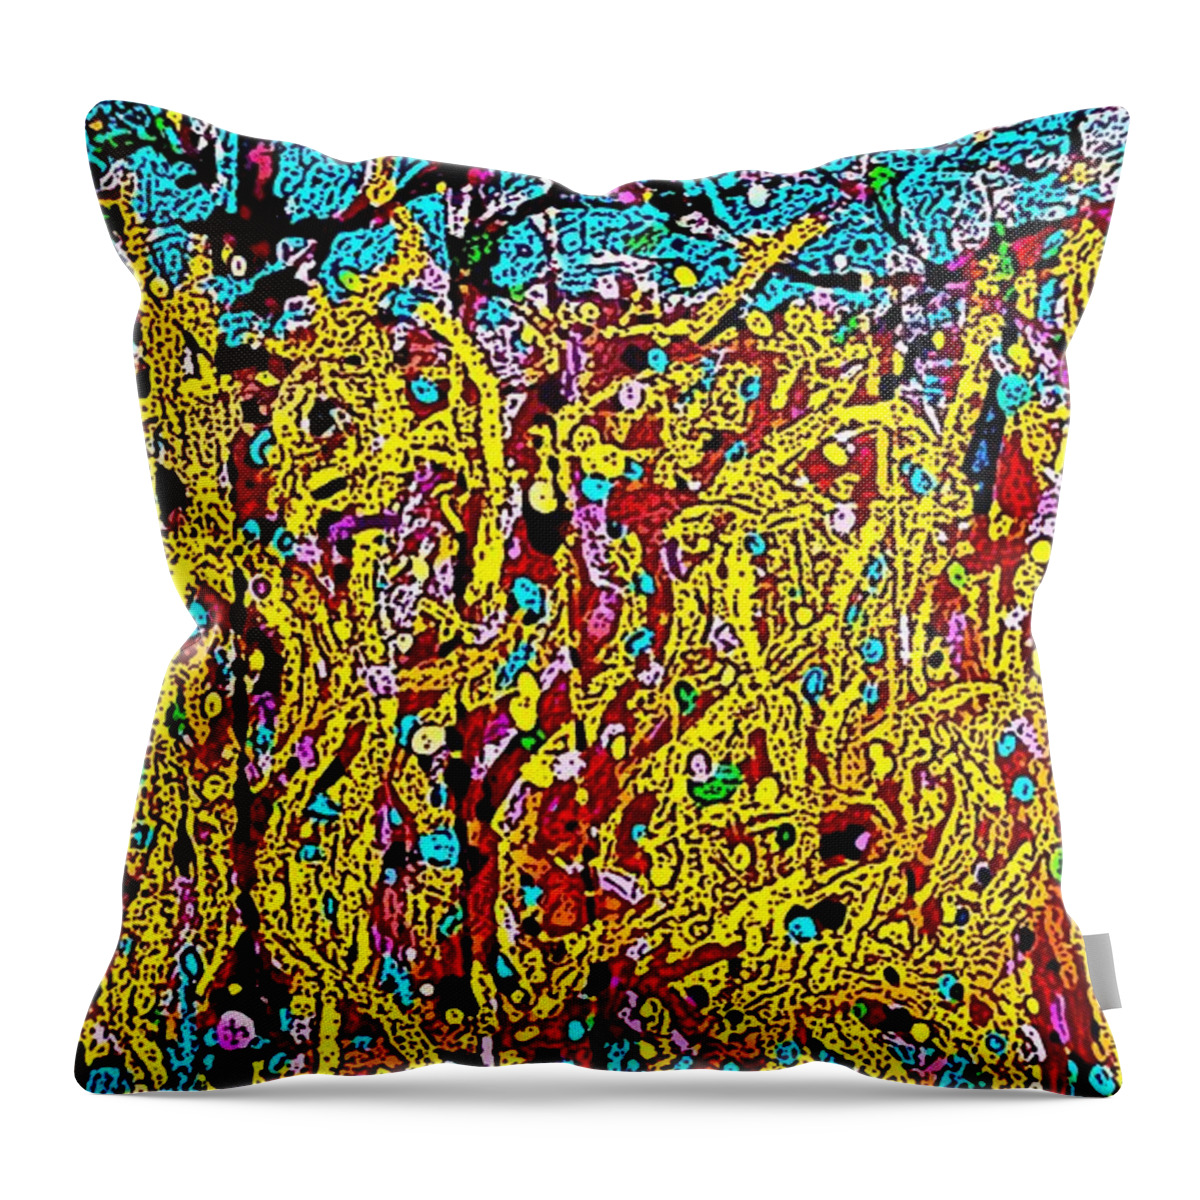 Fire Throw Pillow featuring the digital art Forest FireII by Joe Roache